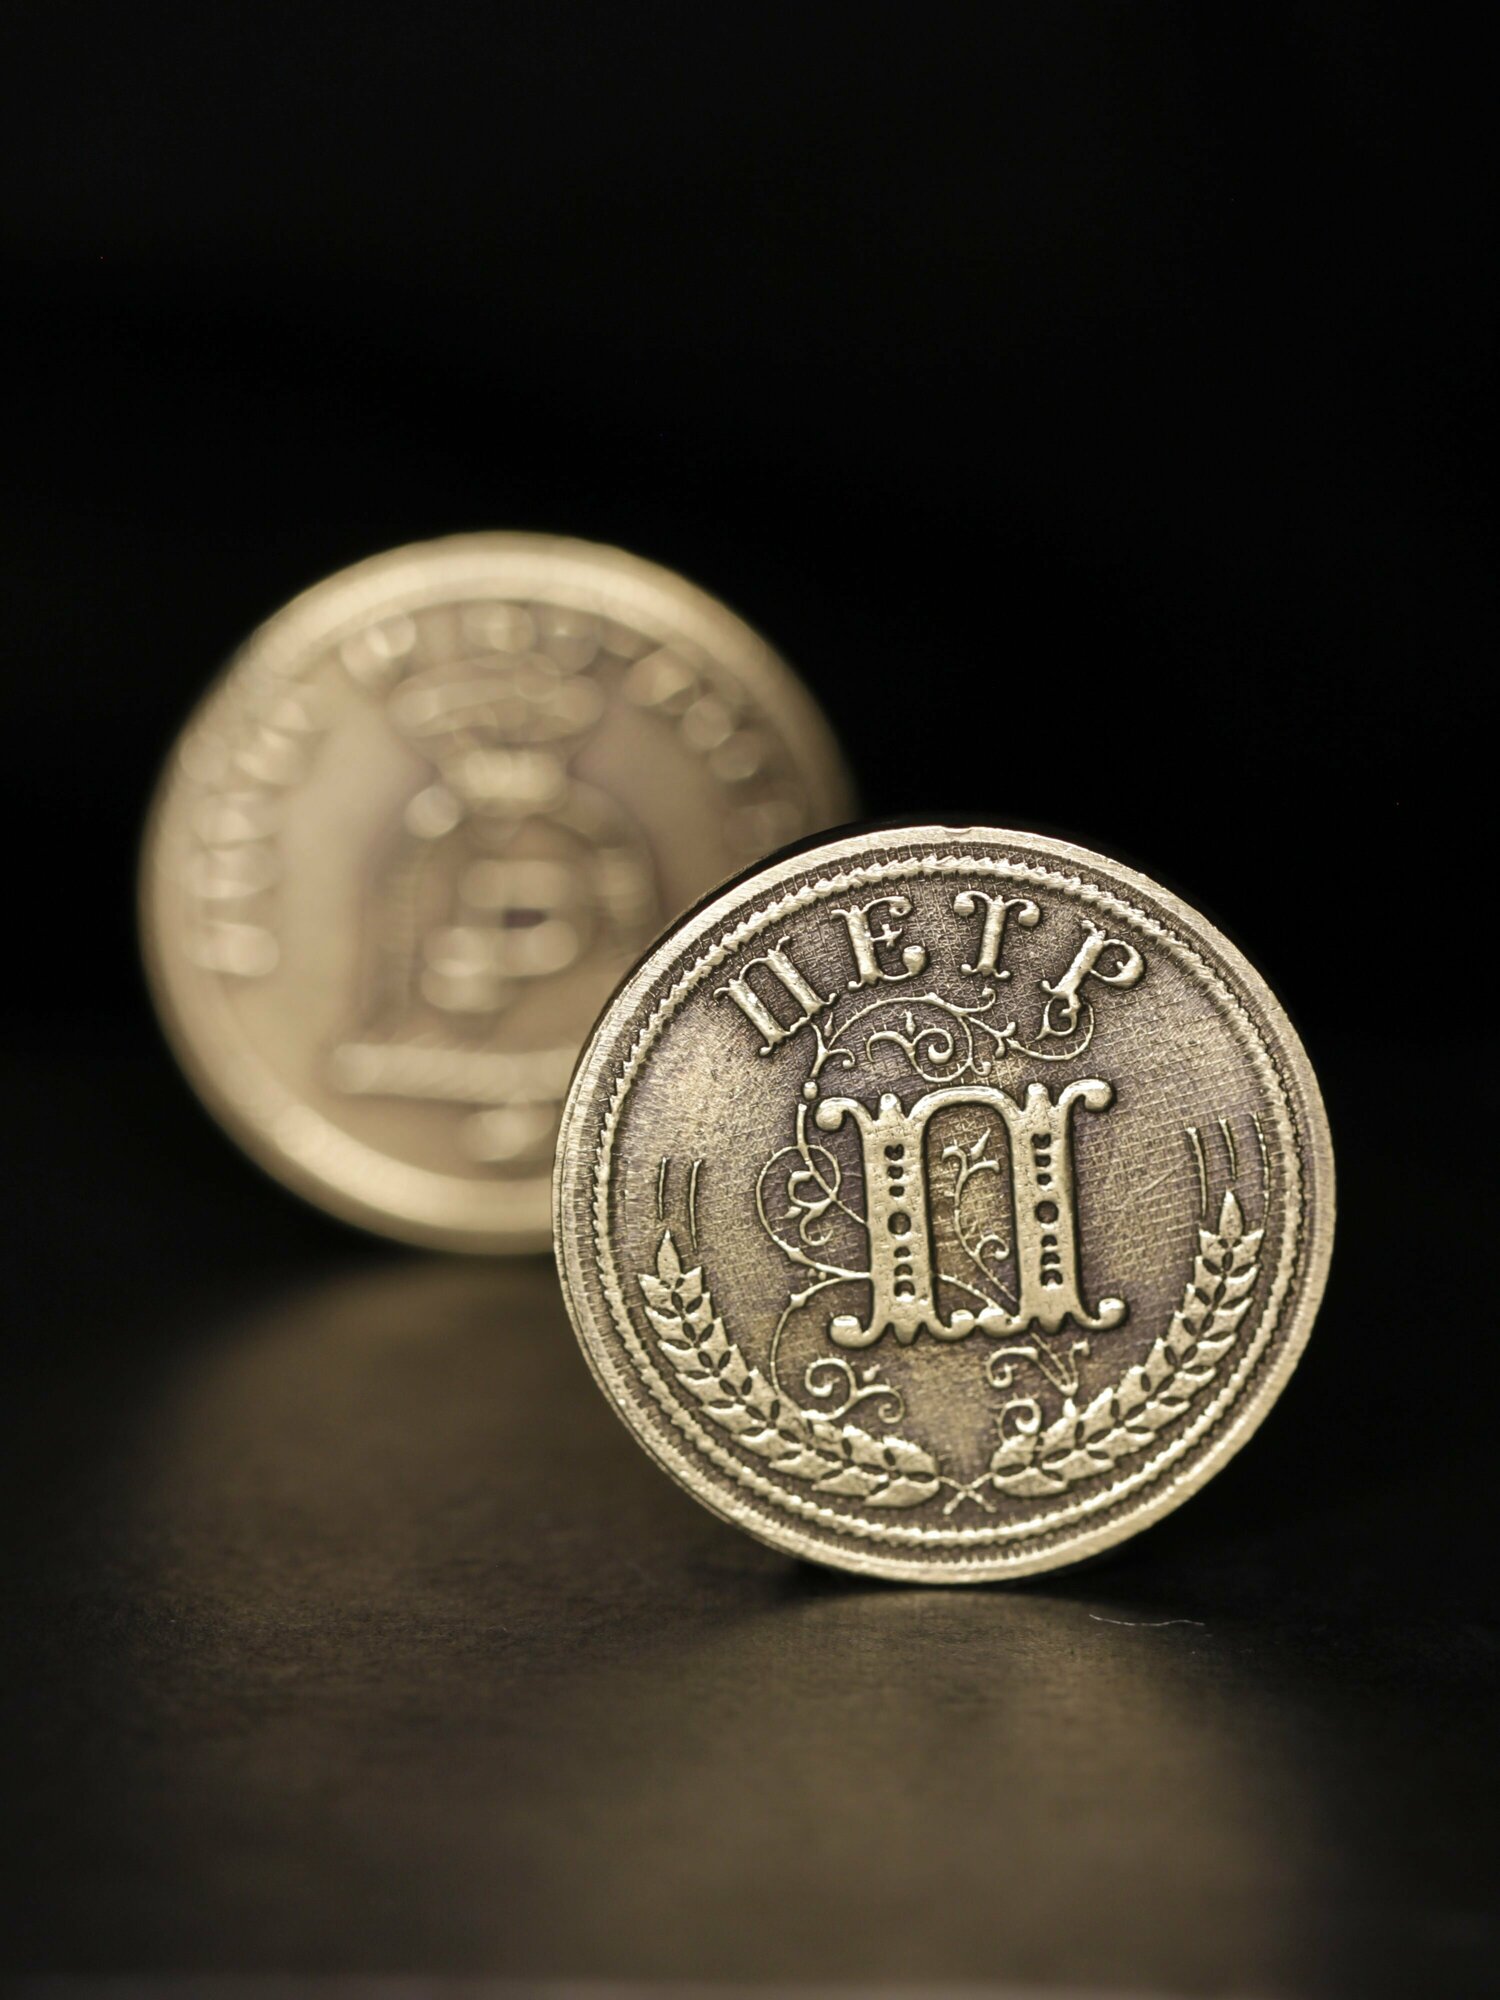 Именная оригинальна сувенирная монетка в подарок на богатство и удачу мужчине или мальчику - Петр